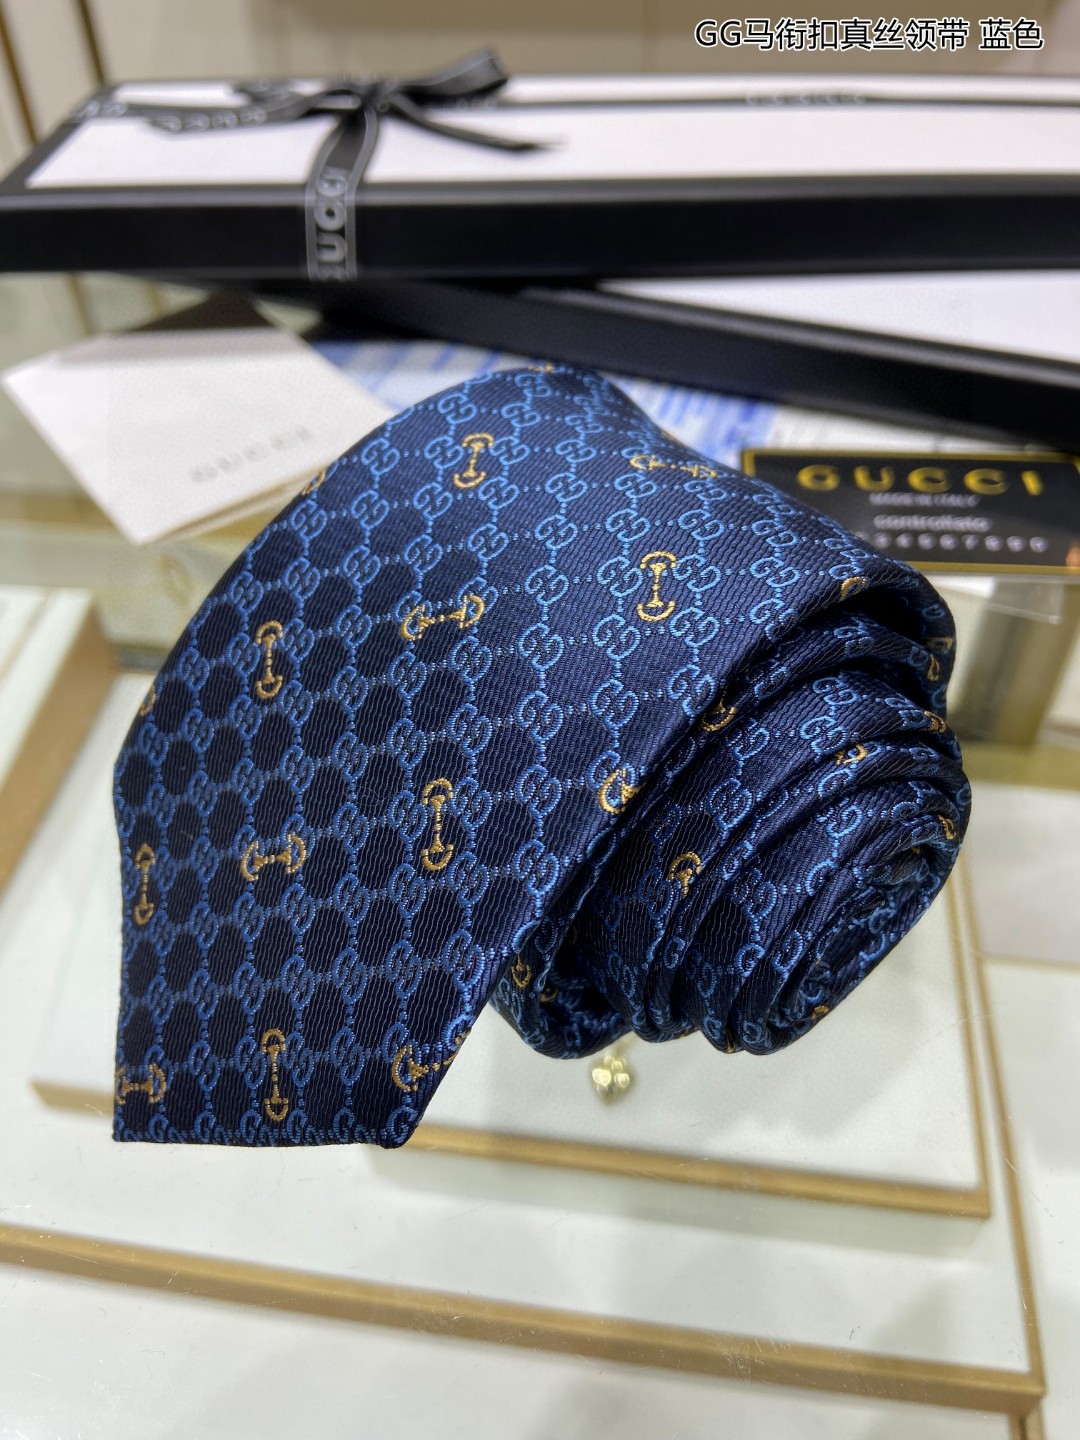 上新特价G家男士领带系列GG马衔扣真丝领带稀有展现精湛手工与时尚优雅的理想选择这款领带将标志性的主题动物